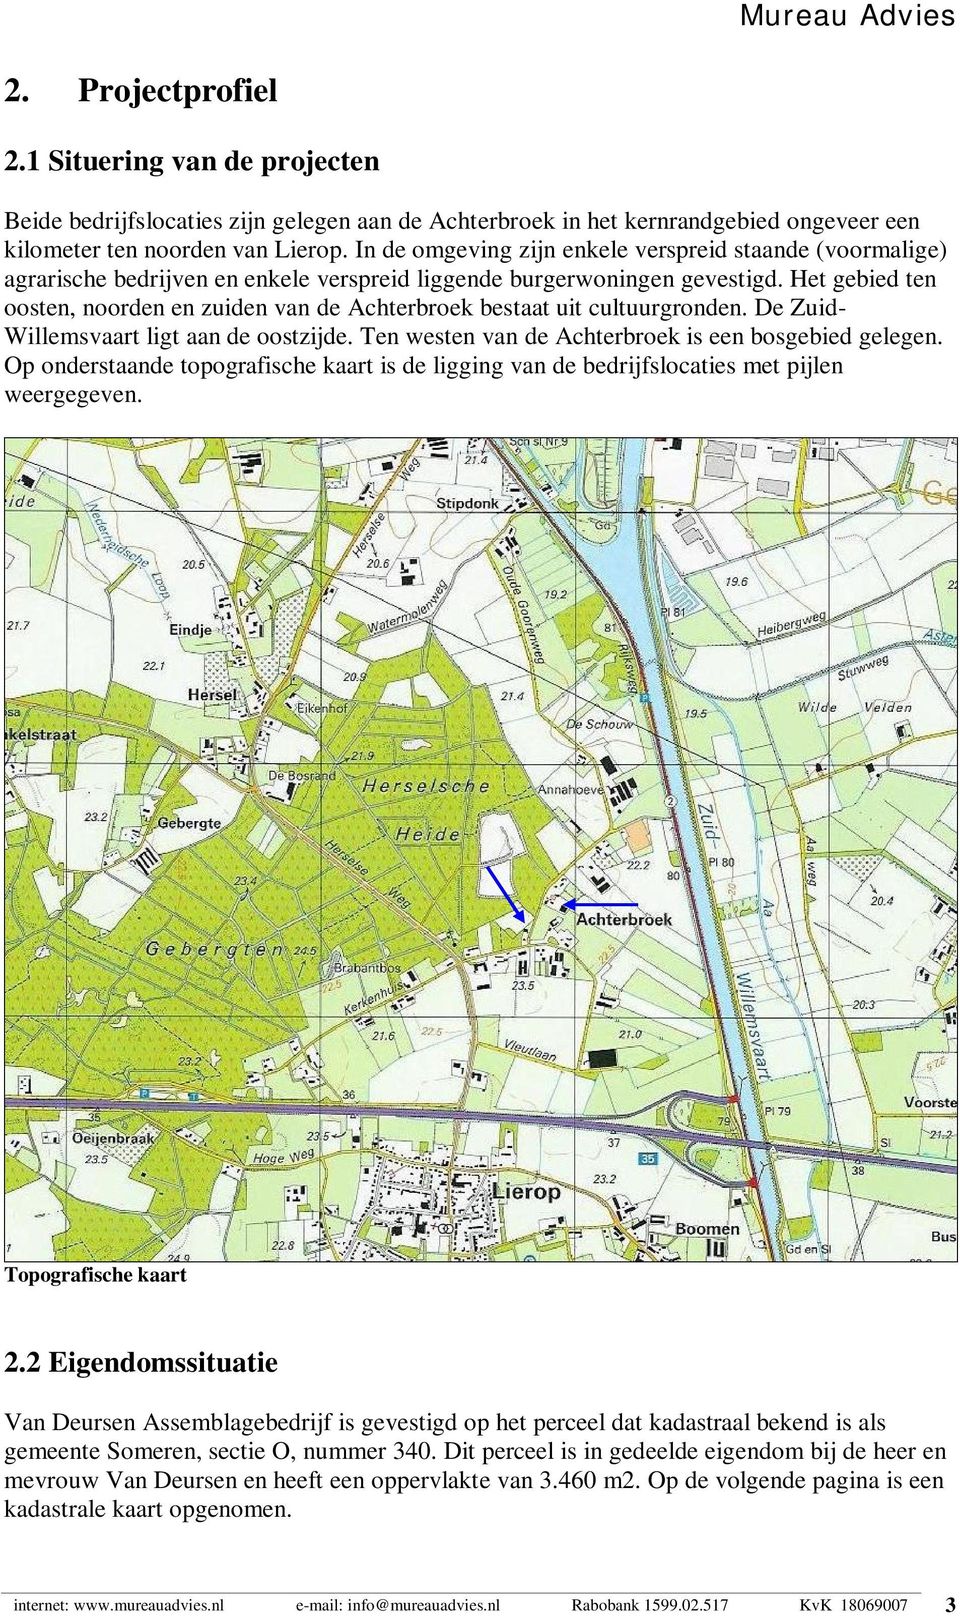 Het gebied ten oosten, noorden en zuiden van de Achterbroek bestaat uit cultuurgronden. De Zuid- Willemsvaart ligt aan de oostzijde. Ten westen van de Achterbroek is een bosgebied gelegen.